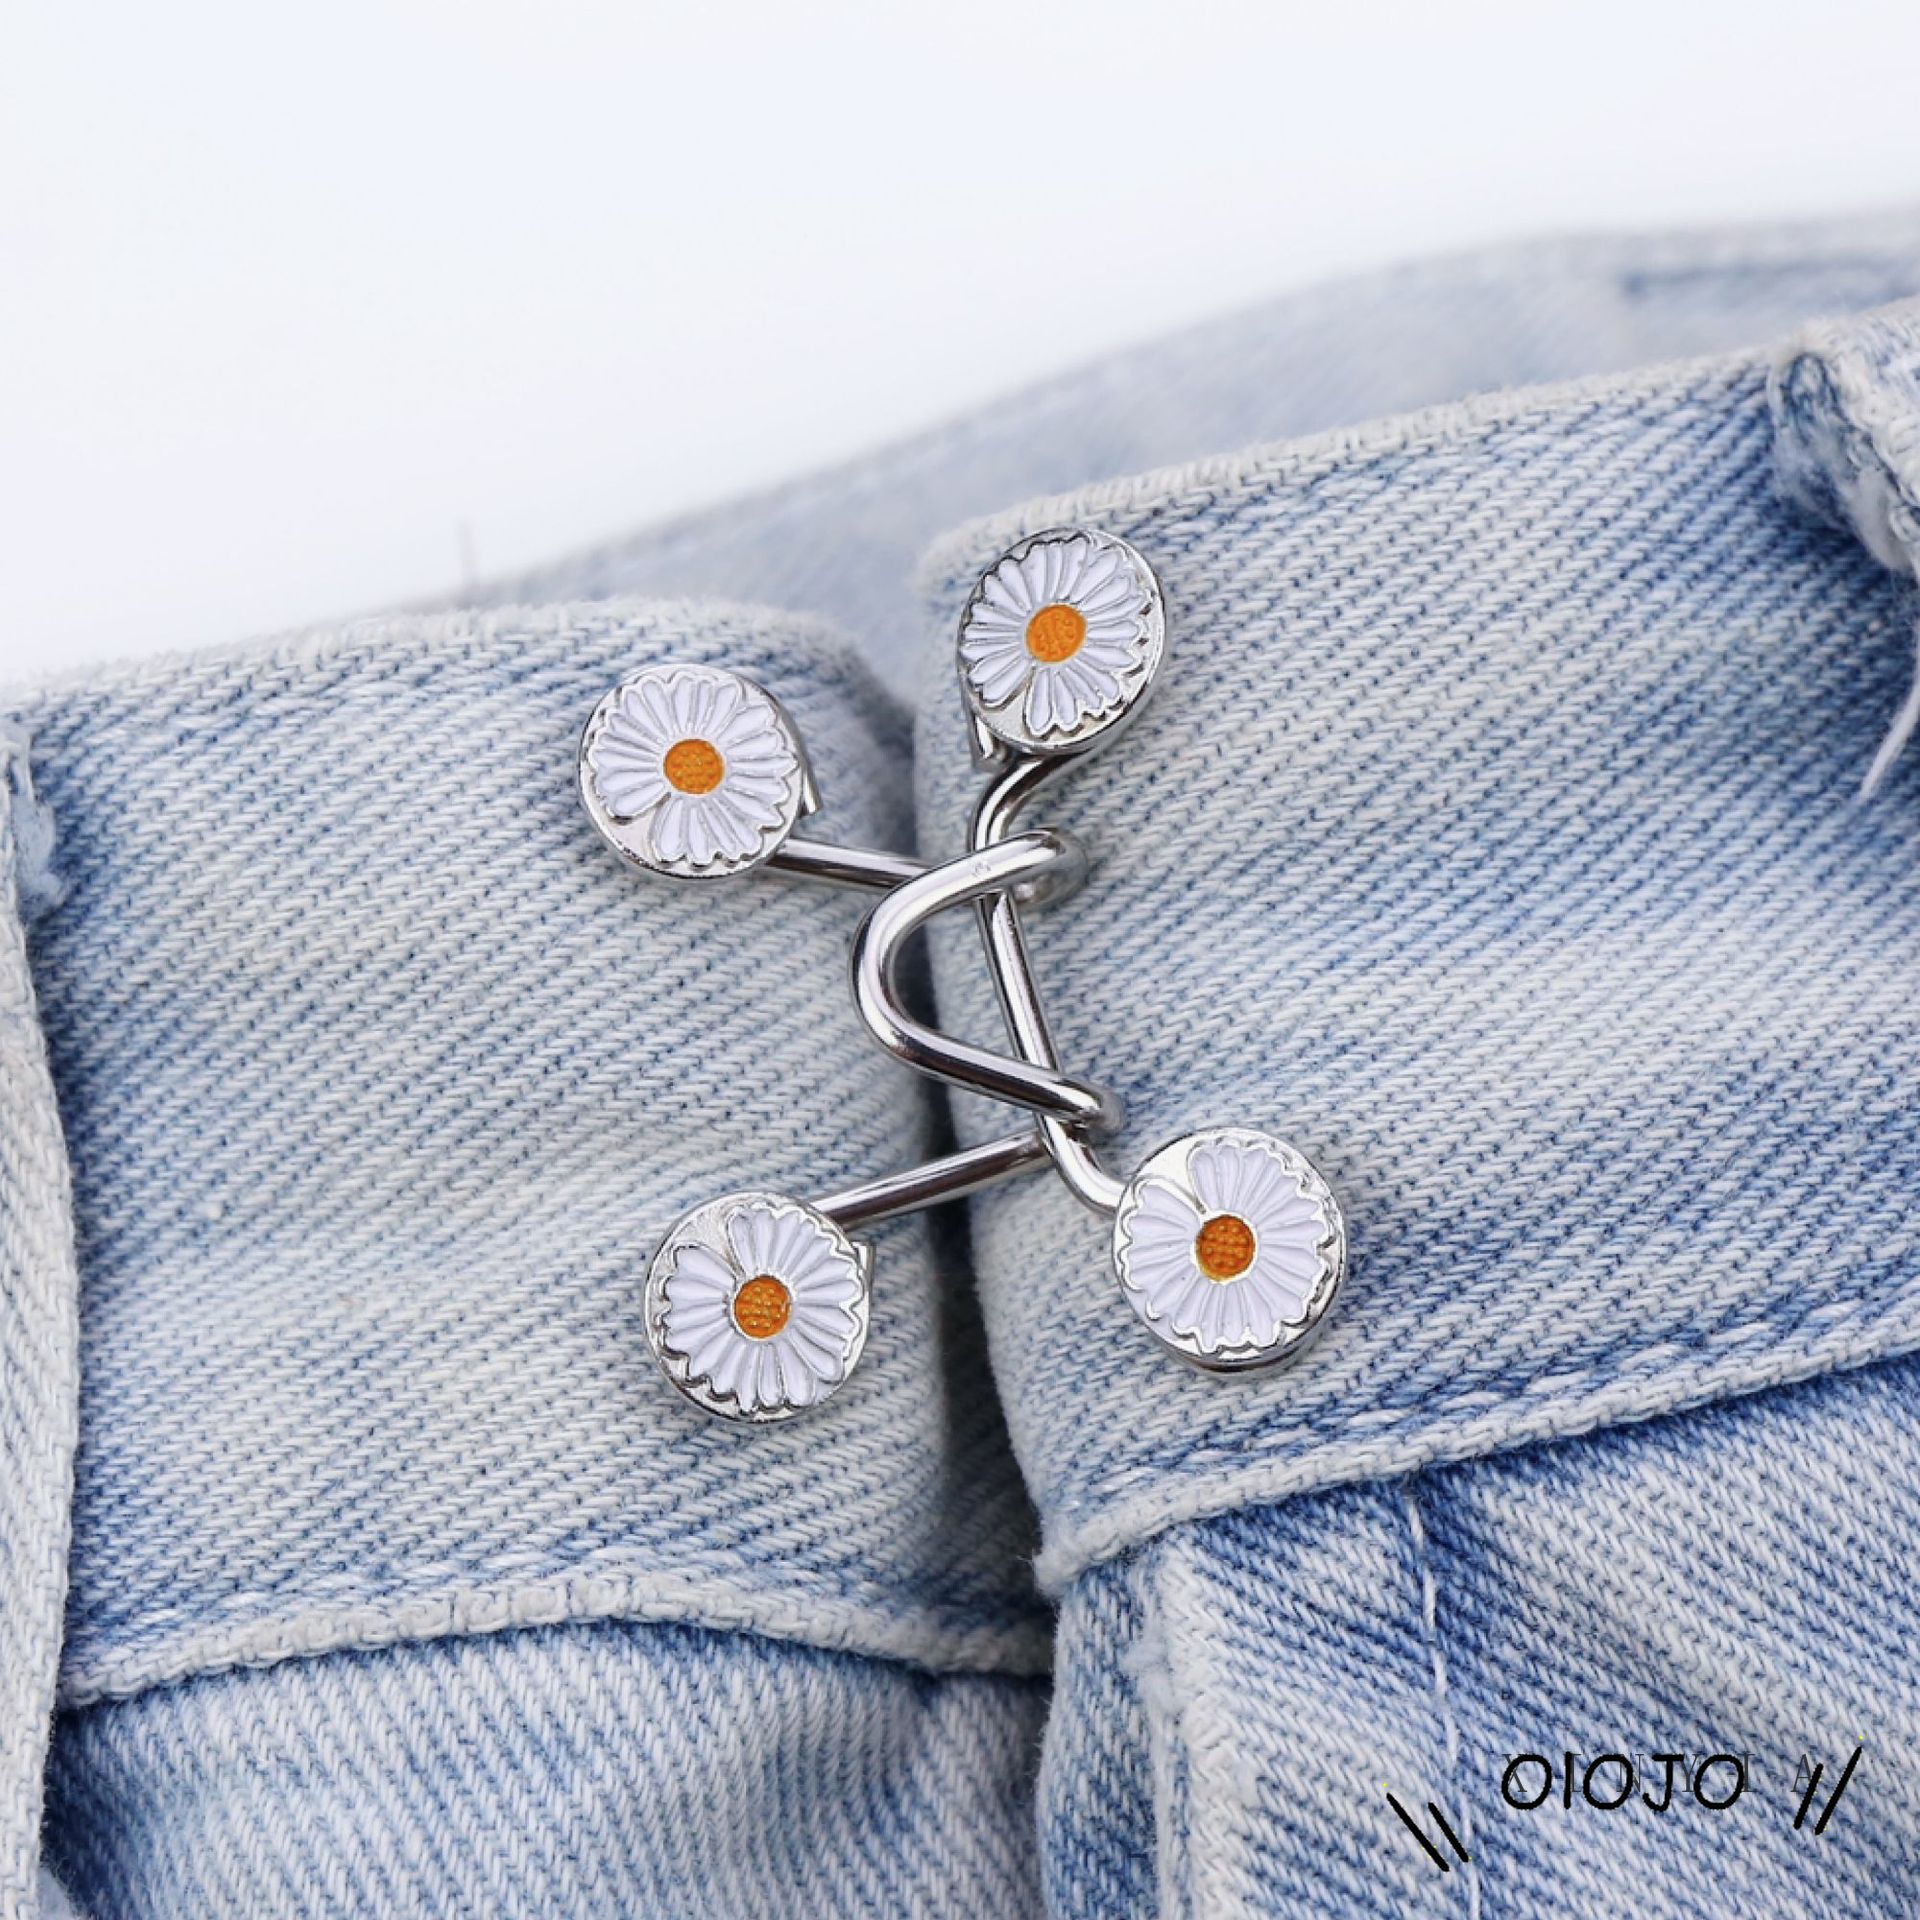 Set nút gài điều chỉnh lưng quần cho nữ thiết kế hình hoa cúc dễ thương